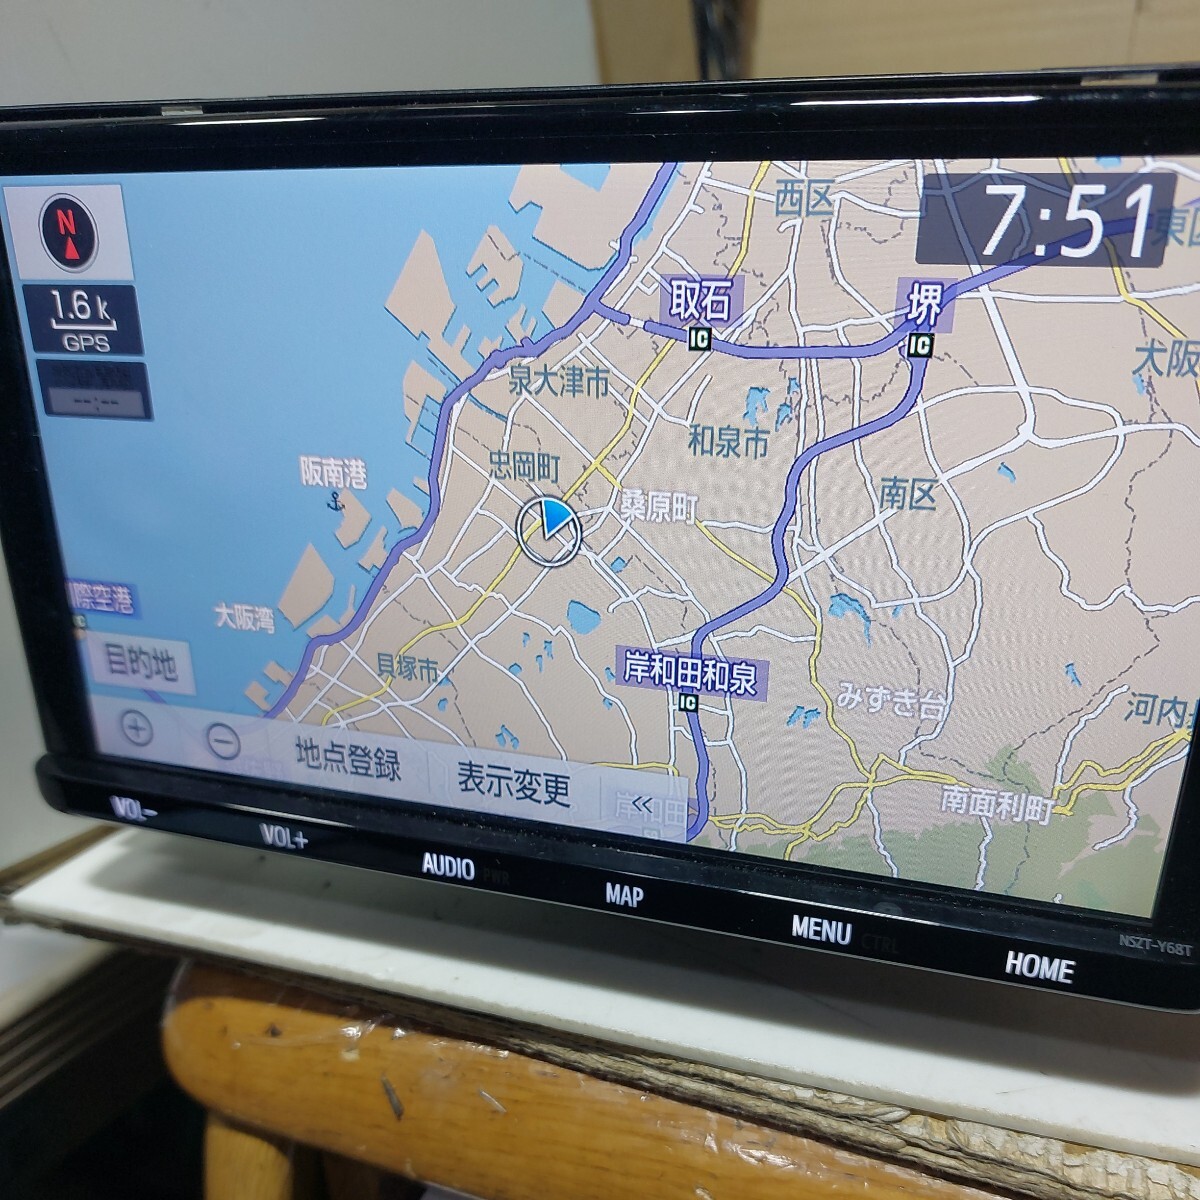 トヨタ NSZT-Y68T 2018年度地図データ (管理番号: 23051456 )の画像3